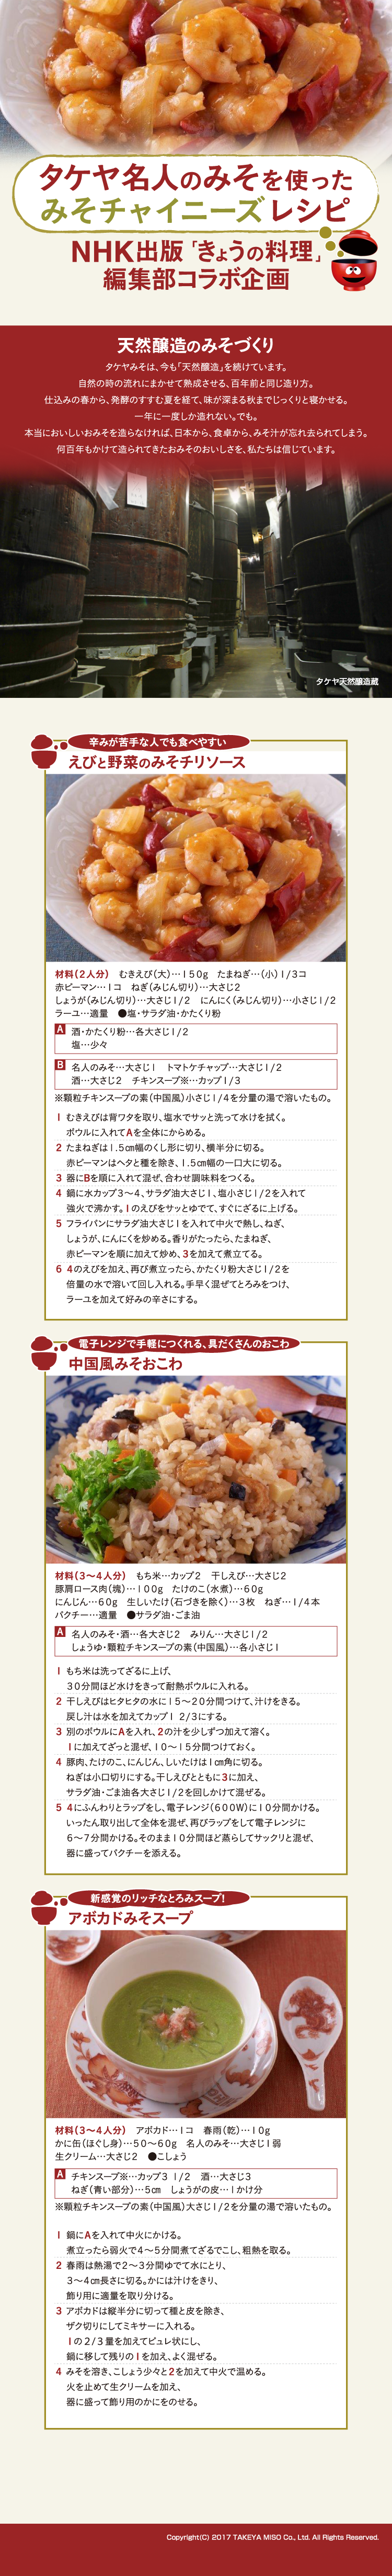 タケヤ名人のみそでつくる NHK出版「きょうの料理」コラボレシピ